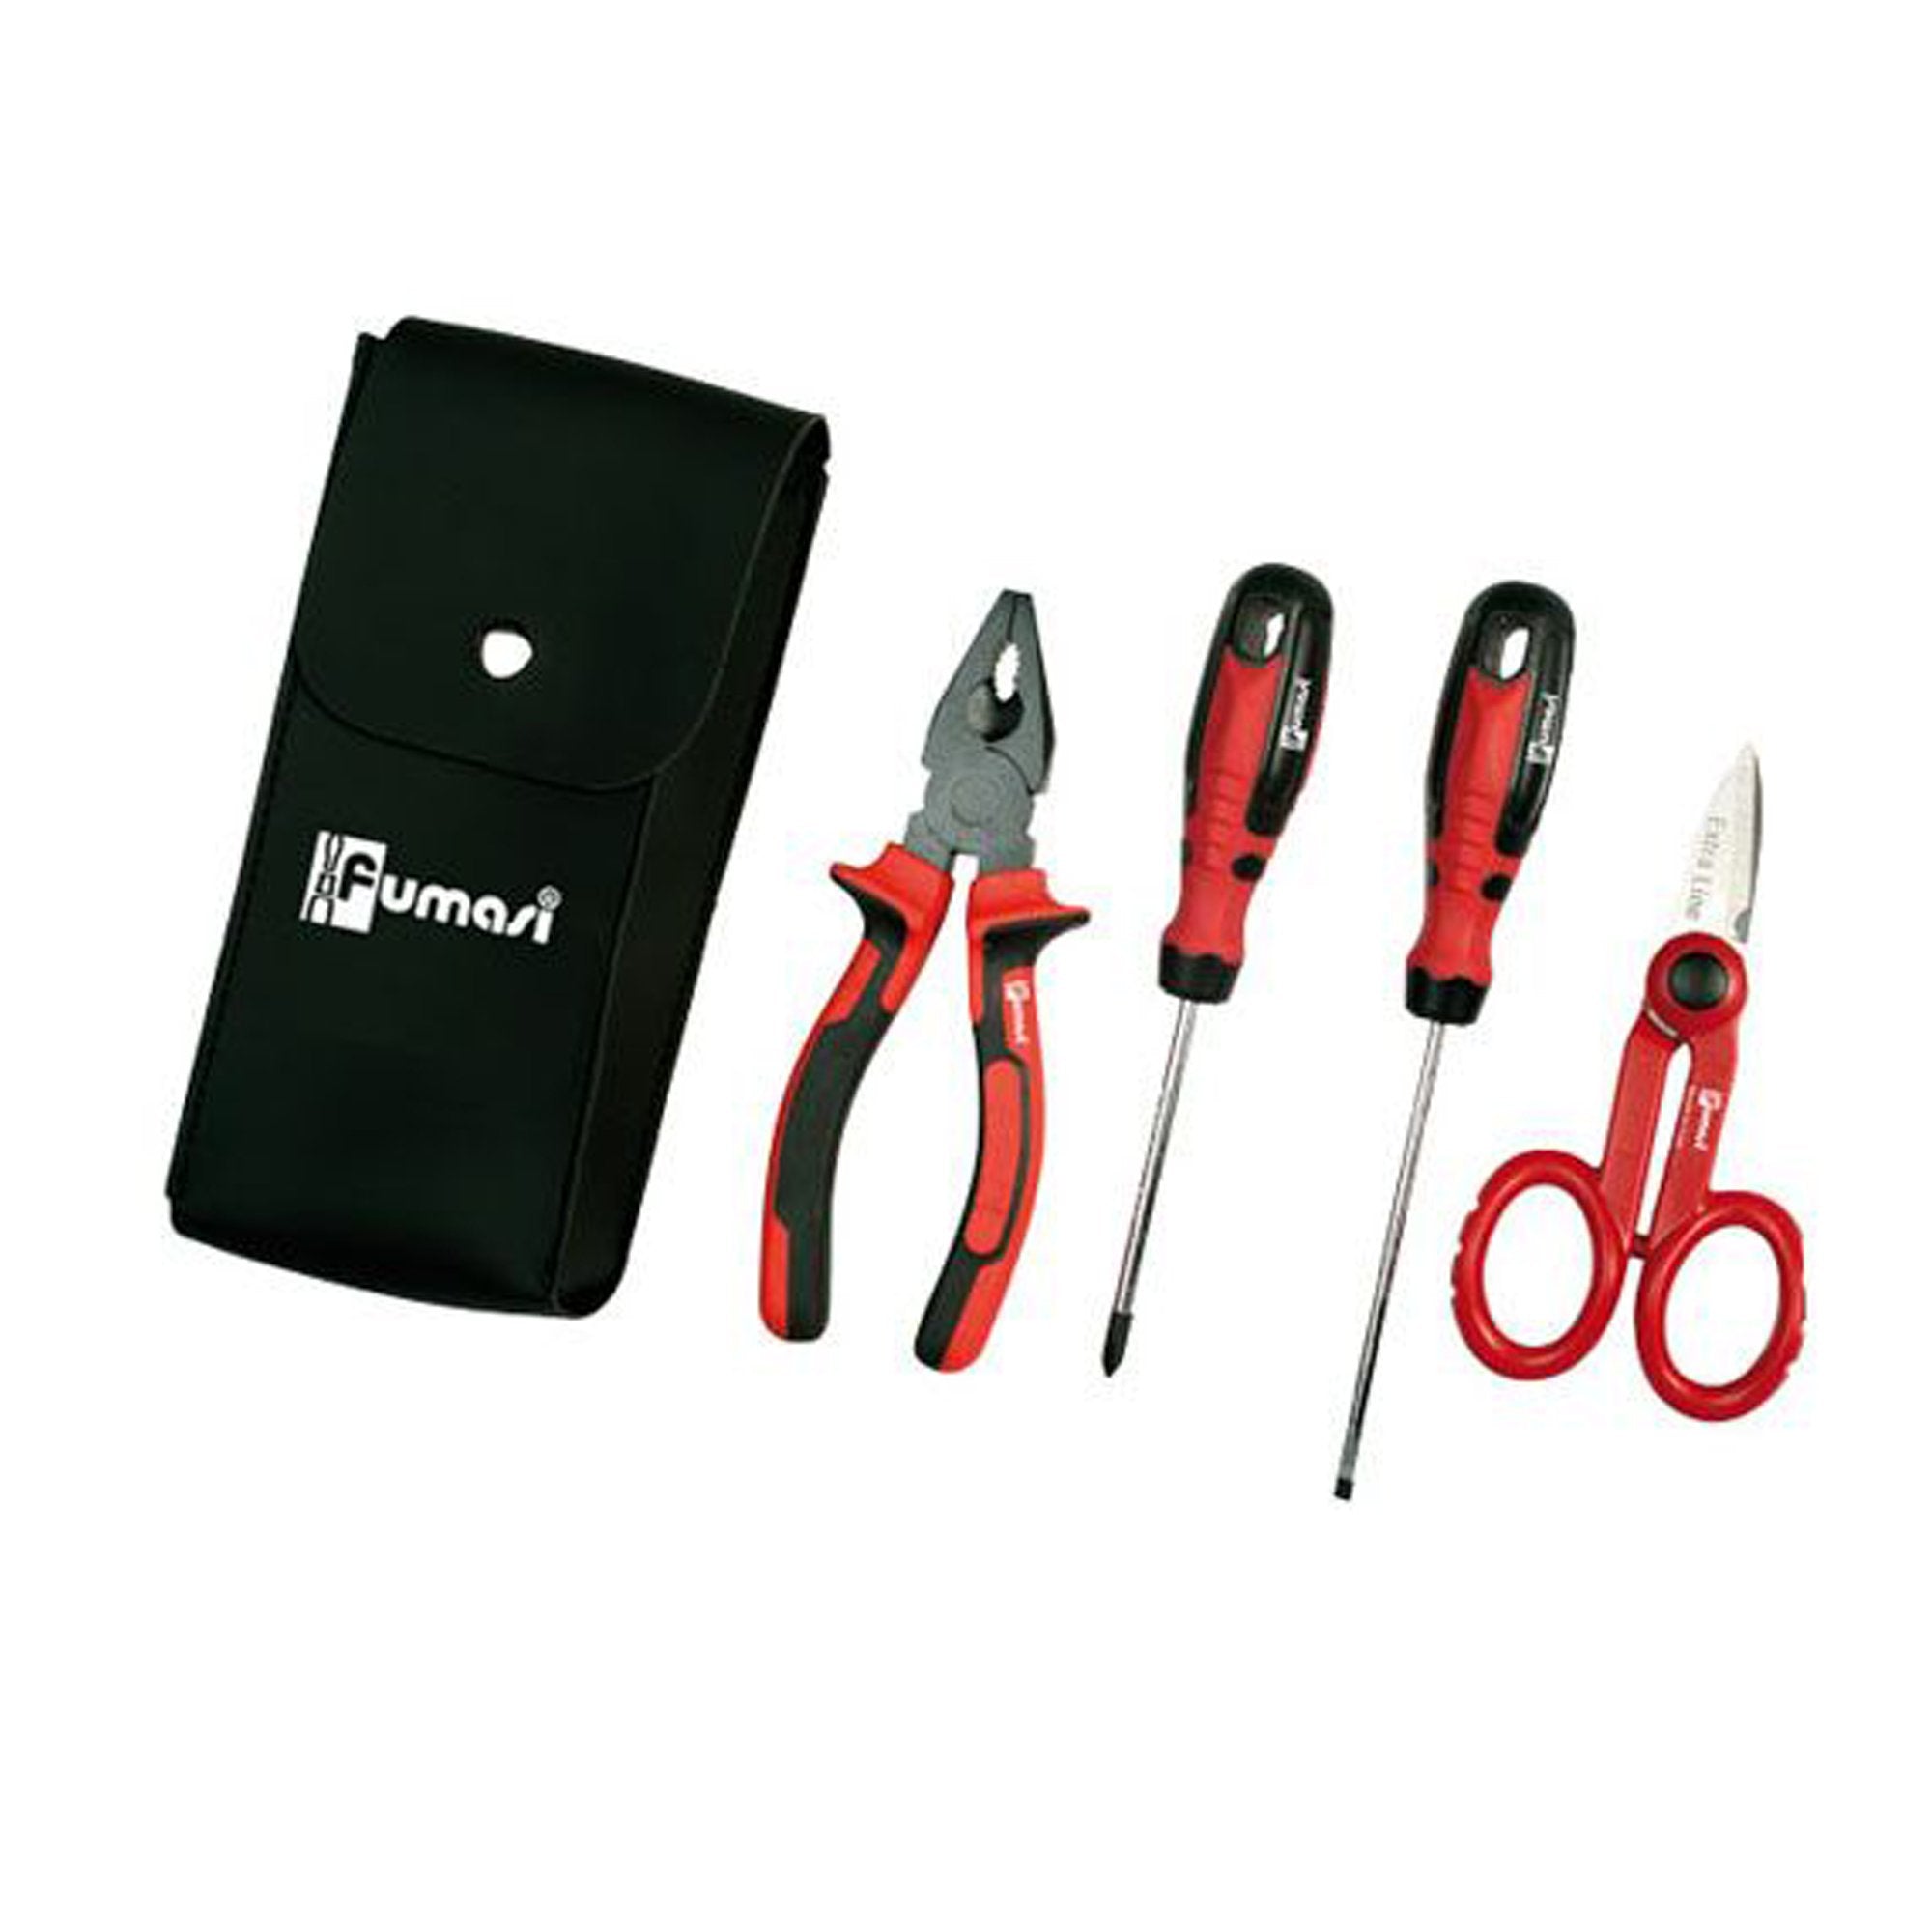 melchioni-family-kit-4-utensili-similpelle-elettricista